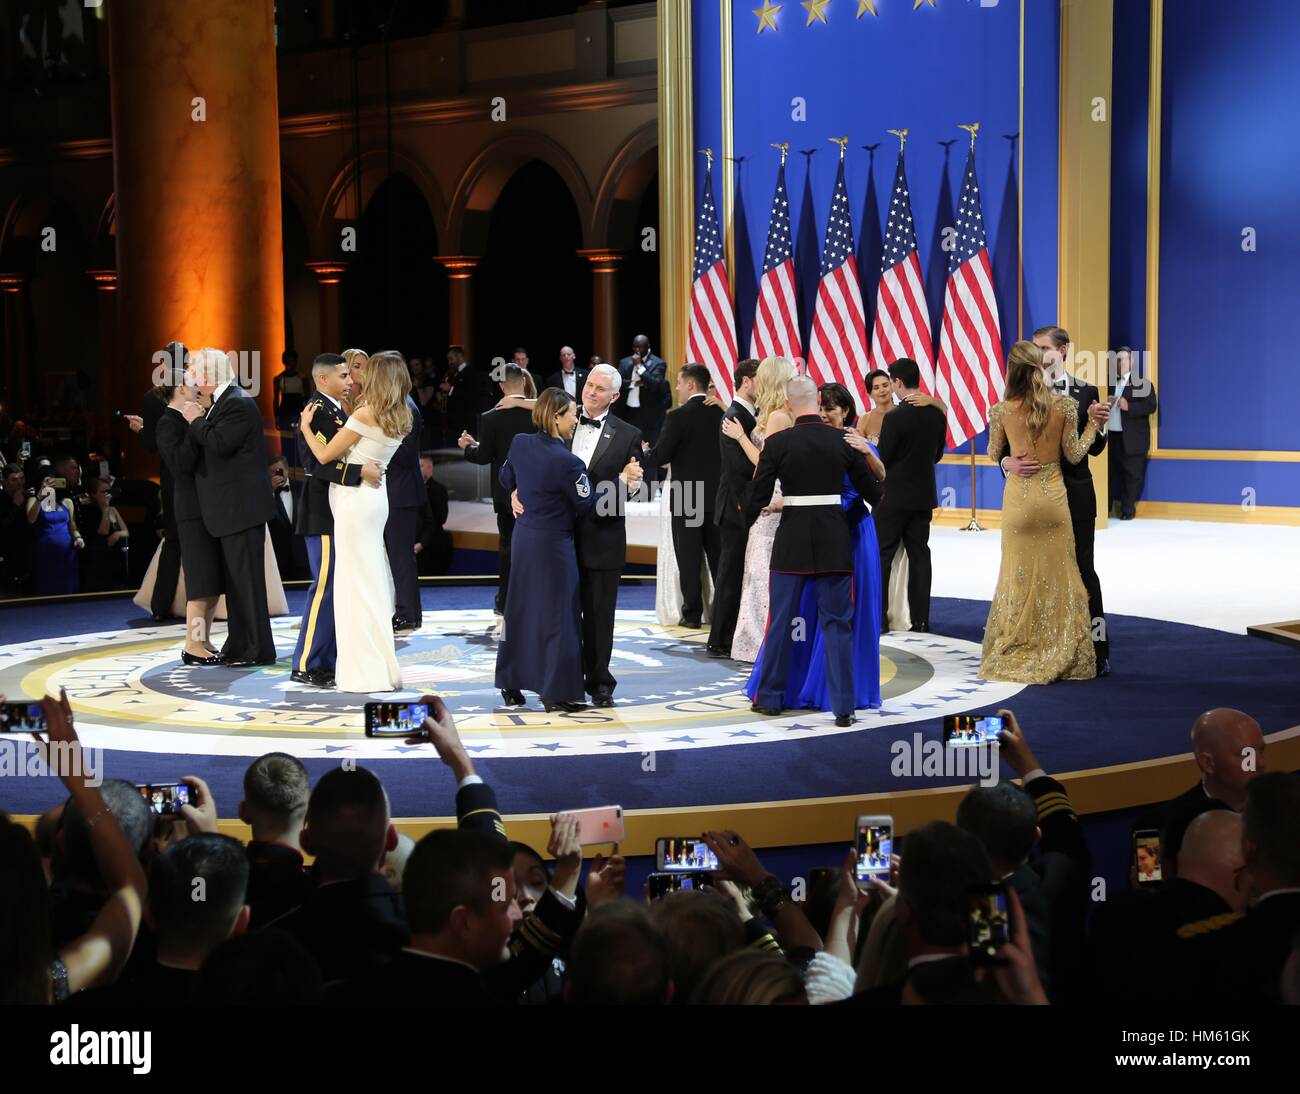 Stati Uniti Presidente Donald Trump, First Lady Melania Trump, Vice Presidente Mike Pence, e seconda Lady Karen Pence danza con soldati alla salute per i nostri servizi armati sfera presso il National Building Museum Gennaio 20, 2017 a Washington, DC. Foto Stock